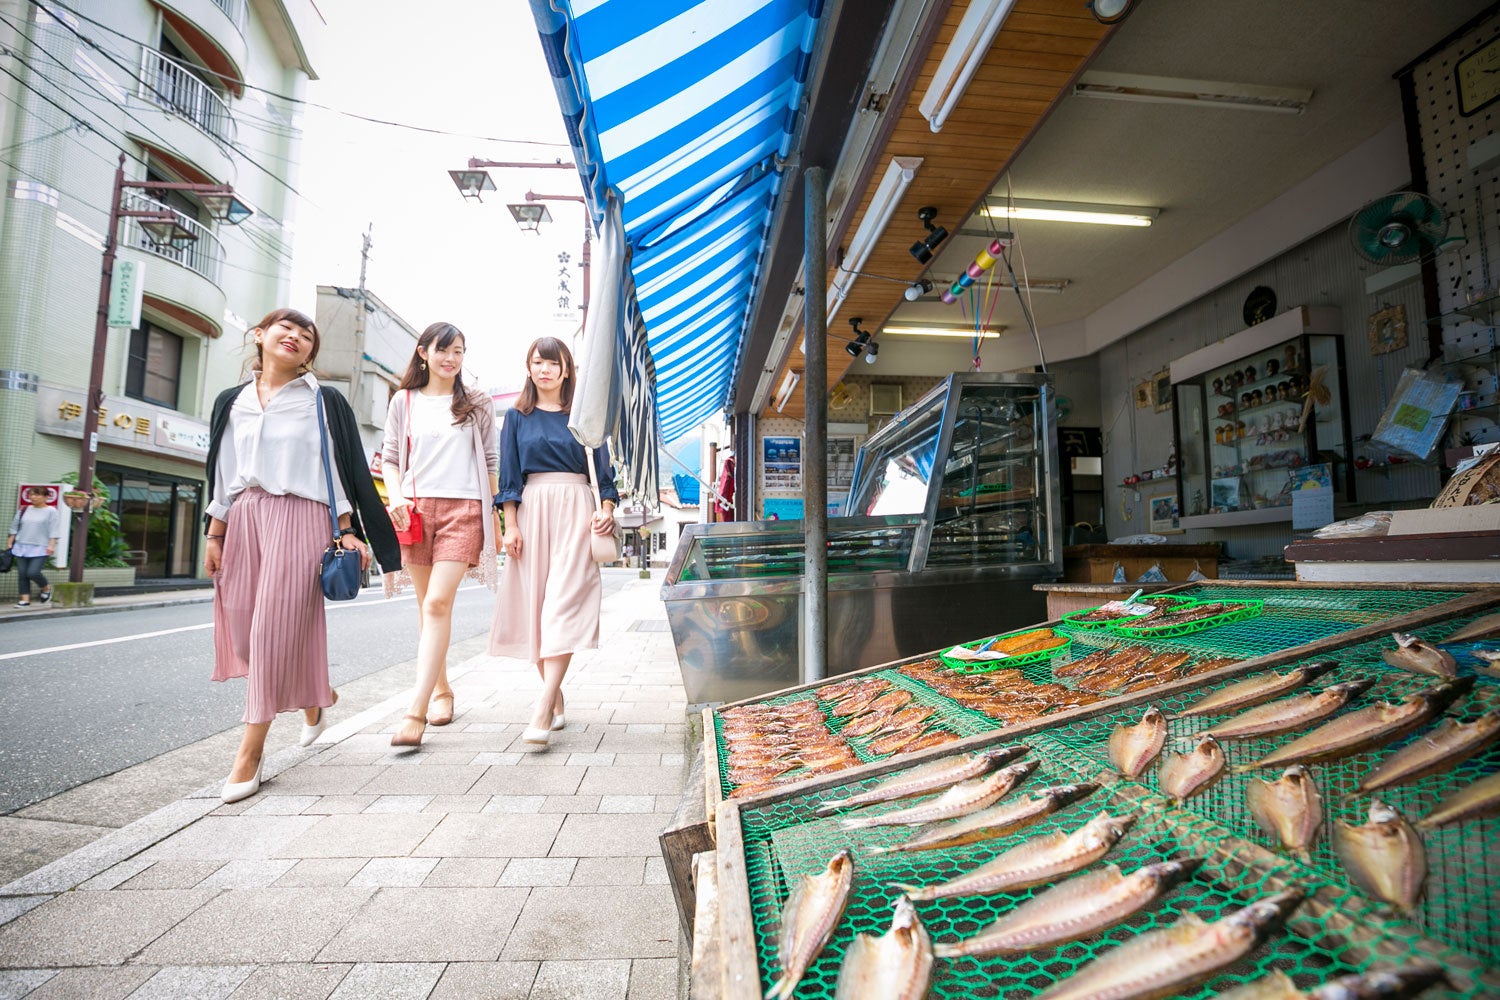 200年前の文献からレシピを読み解き、「江戸前鮨」の原点ともいえる「江戸料理」を組みこんだ、温故知新の江戸前鮨が楽しめる新店がこのたび、西新宿に誕生します。